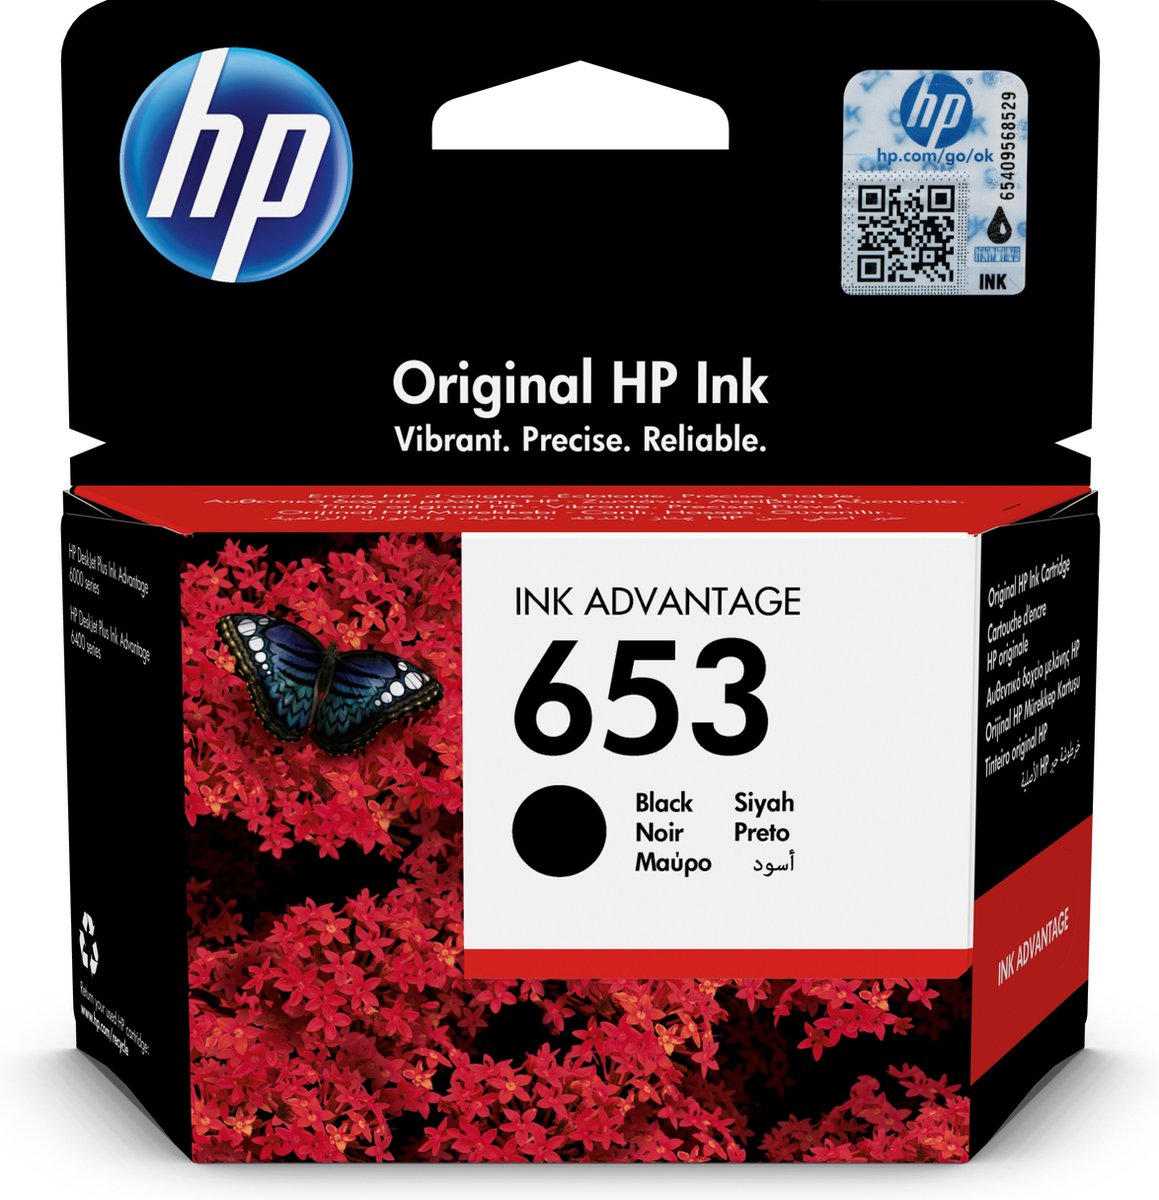 HP 653 Black Original Ink Advantage Cartridge inktcartridge 1 stuk(s) Origineel Normaal rendement Zwart